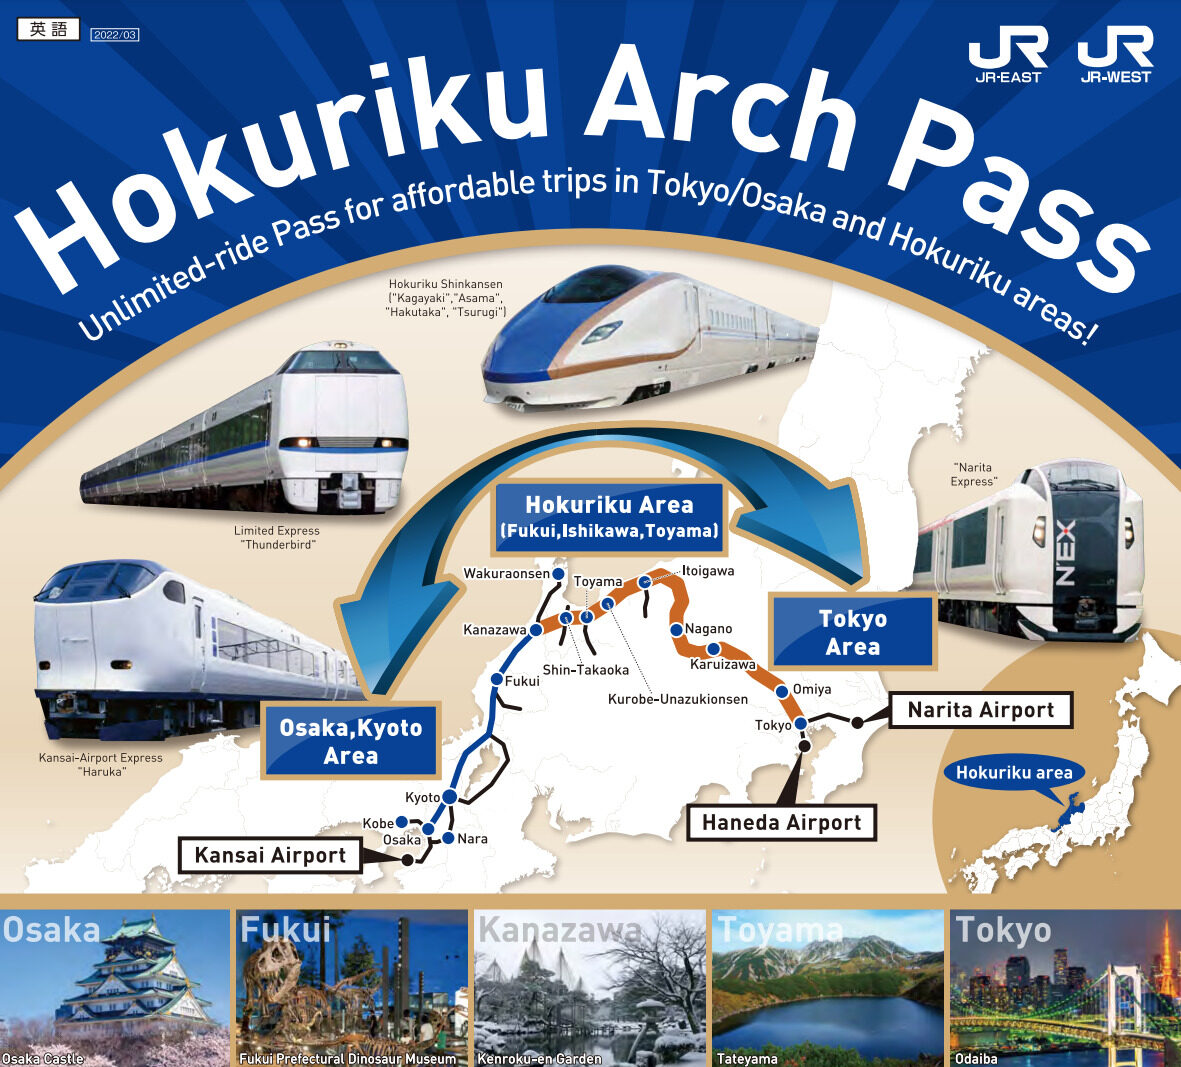 hokuriku-arch-pass-image